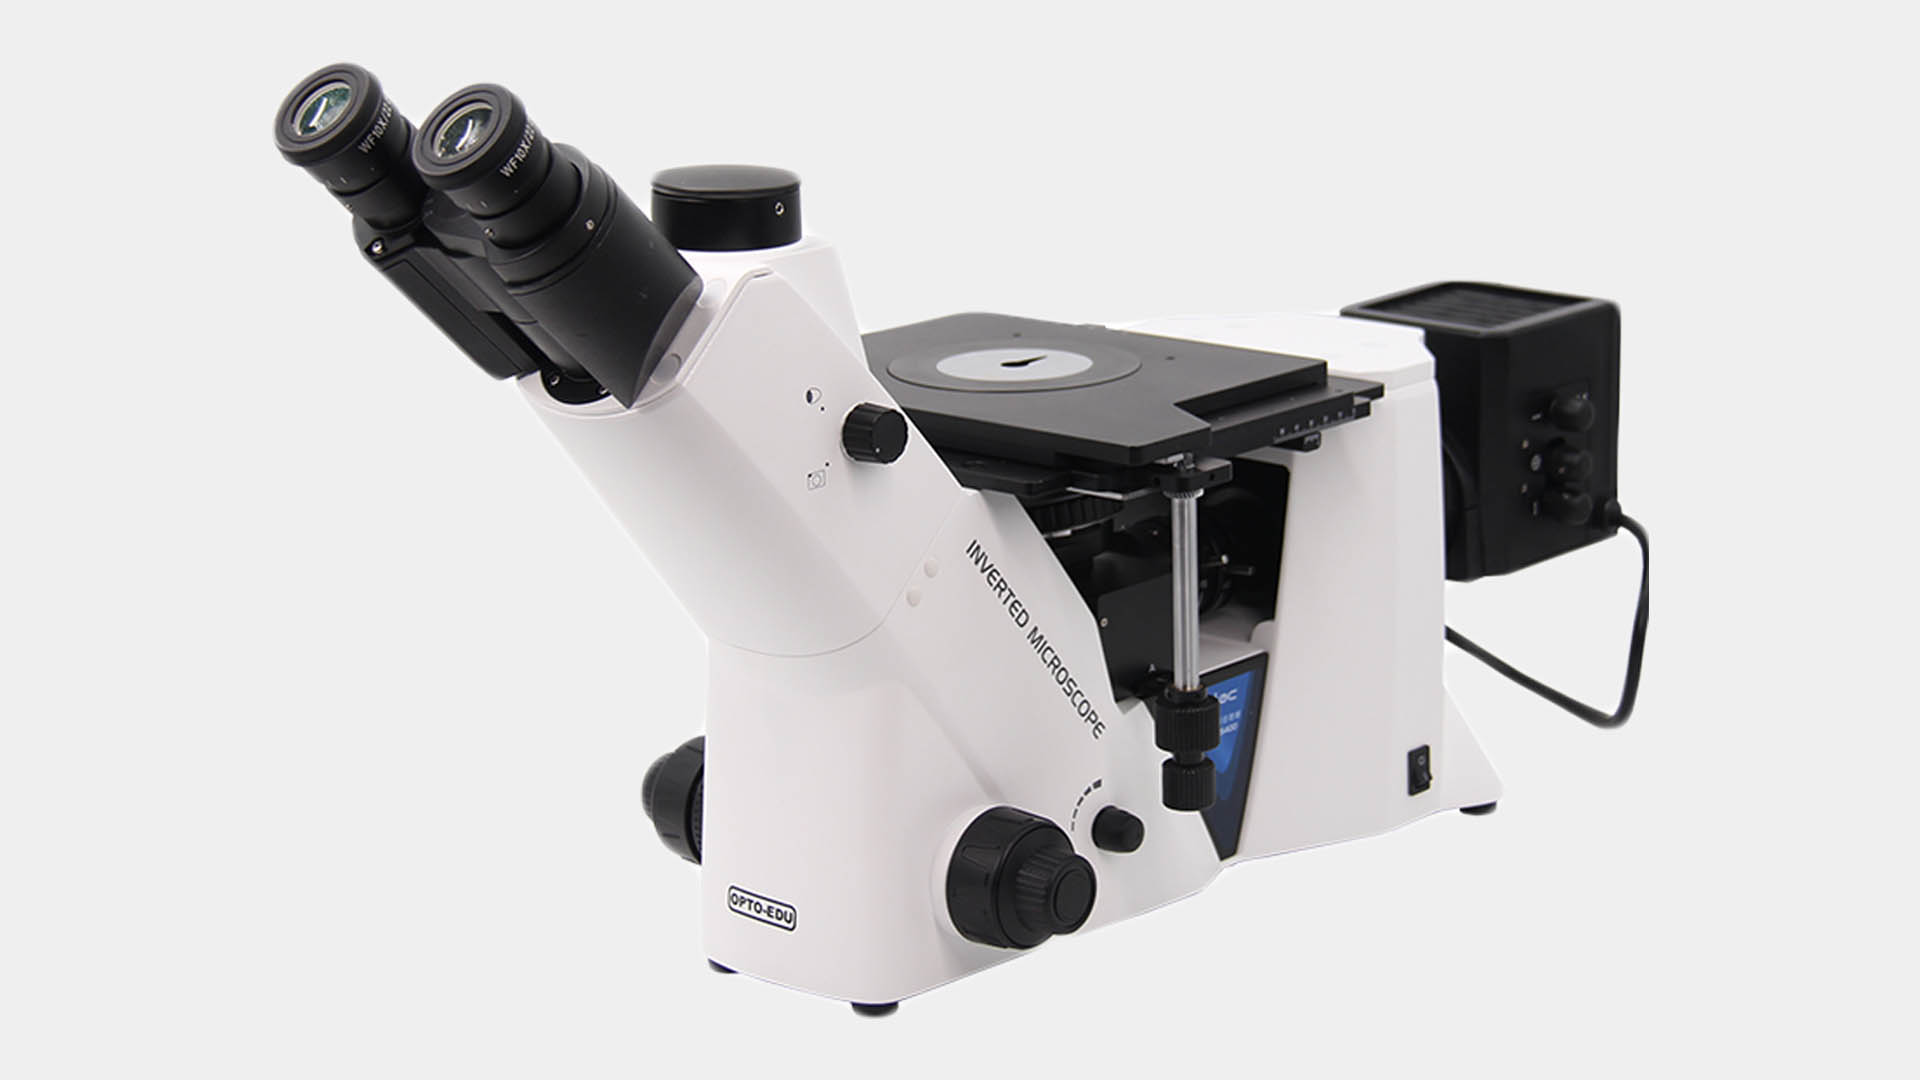 Microscopio de estudiante mono de lente única A11.1524